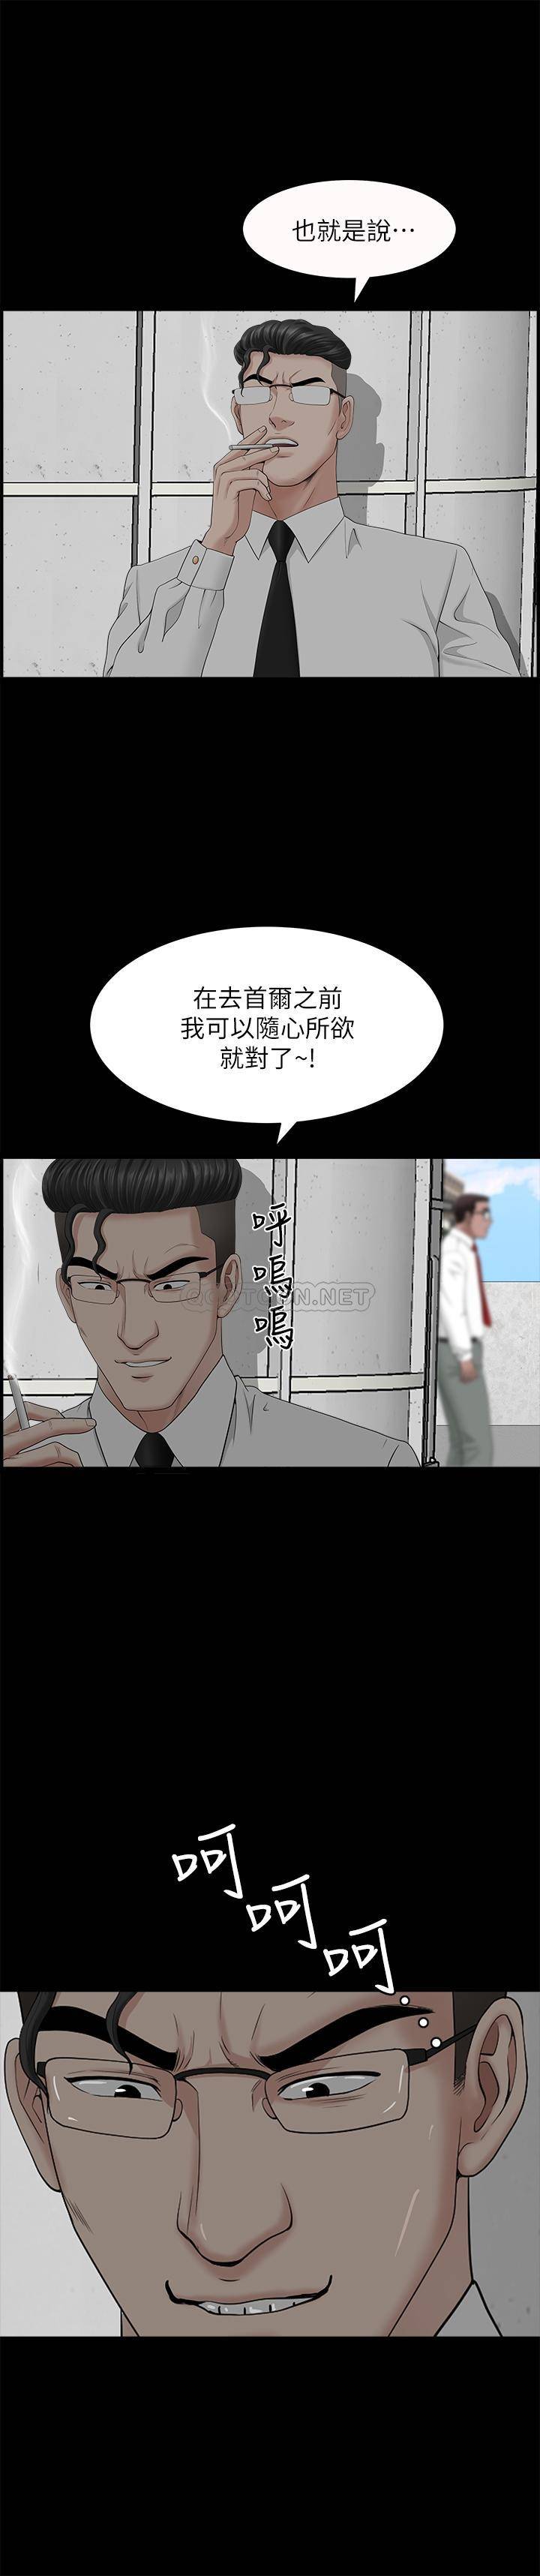 韩国污漫画 雙妻生活 第25话-露出本xìng的邻居 1